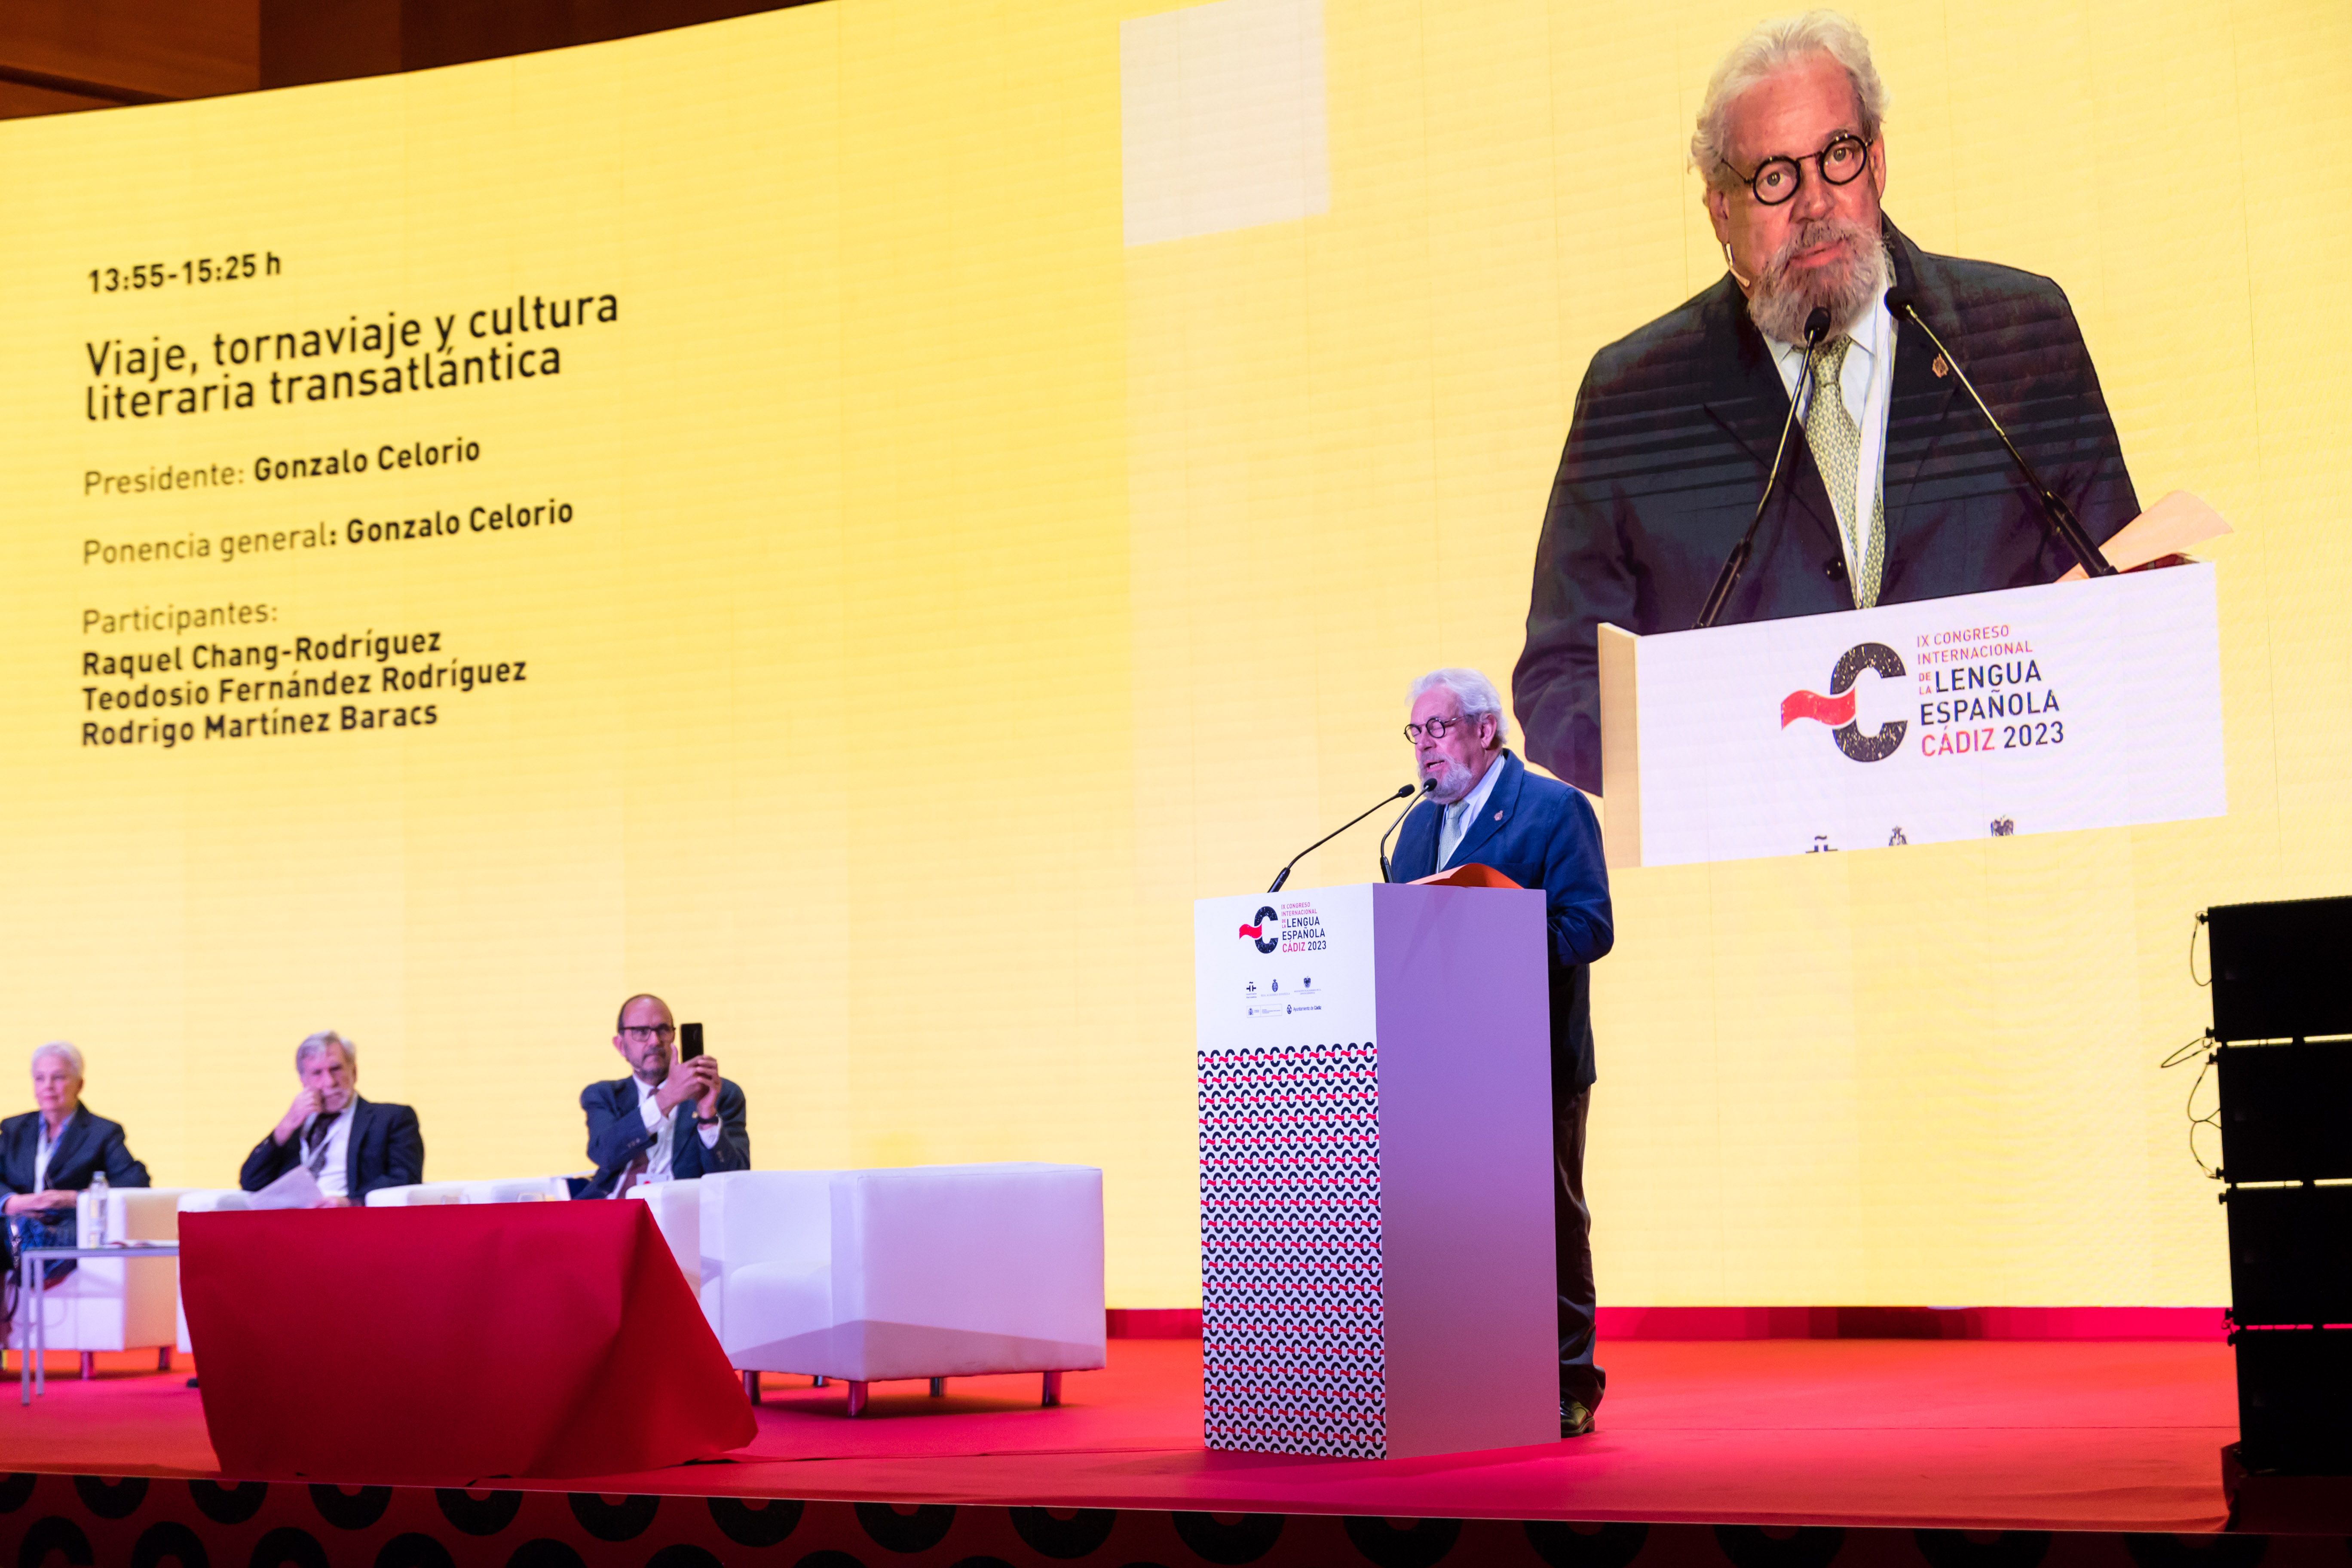 Un momento de la sesión plenaria 'Viaje, tornaviaje y cultura literaria transatlántica', este pasado martes en la segunda jornada del Congreso de la Lengua en Cádiz.